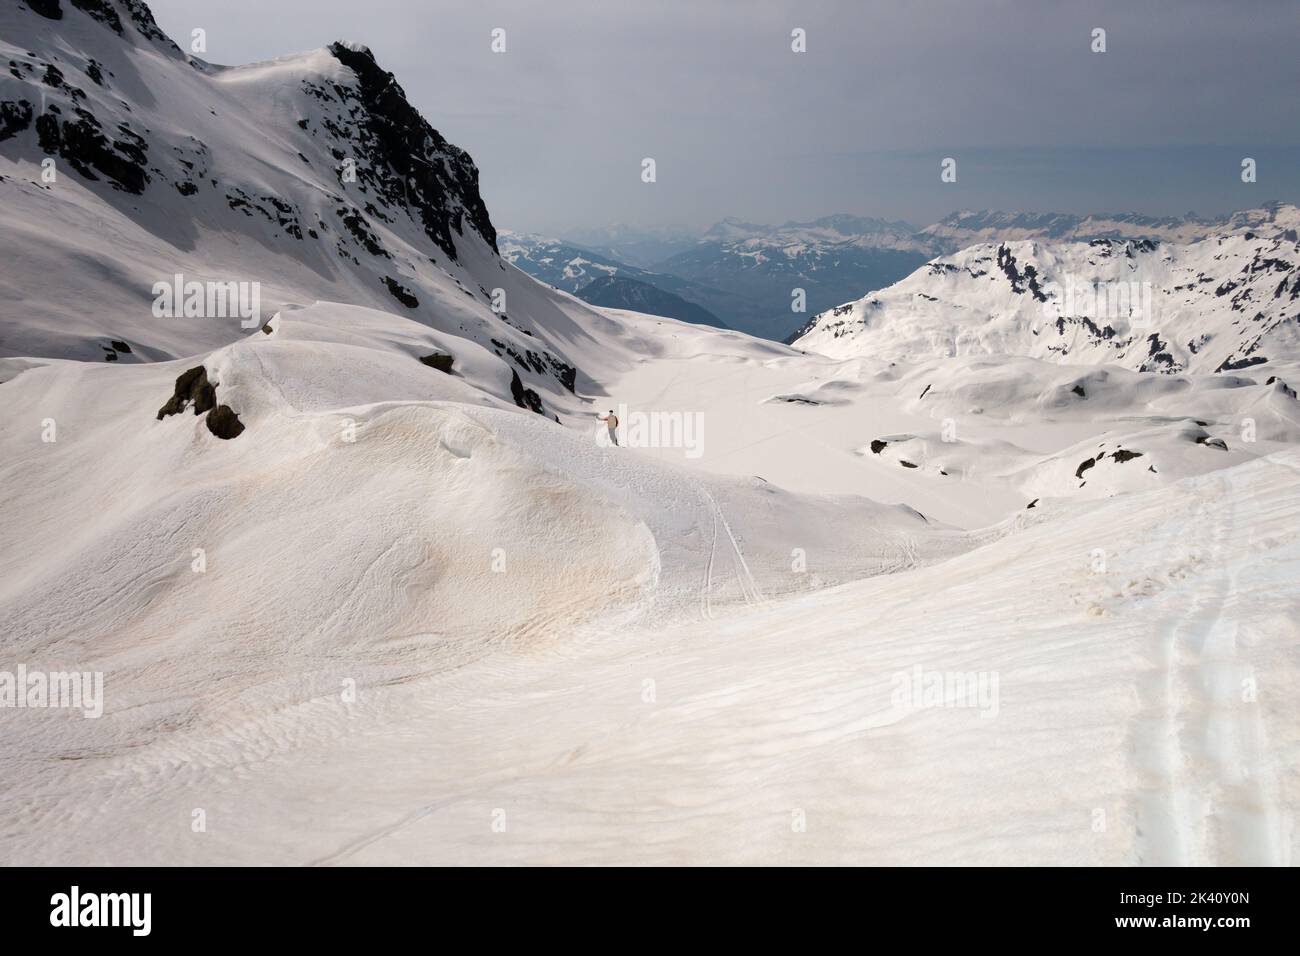 Chamonix, France - 27 mars 2022 : un seul skieur d'arrière-pays sur une crête enneigée après la tempête de poussière de sable du Sahara surplombant la vue d'hiver Banque D'Images